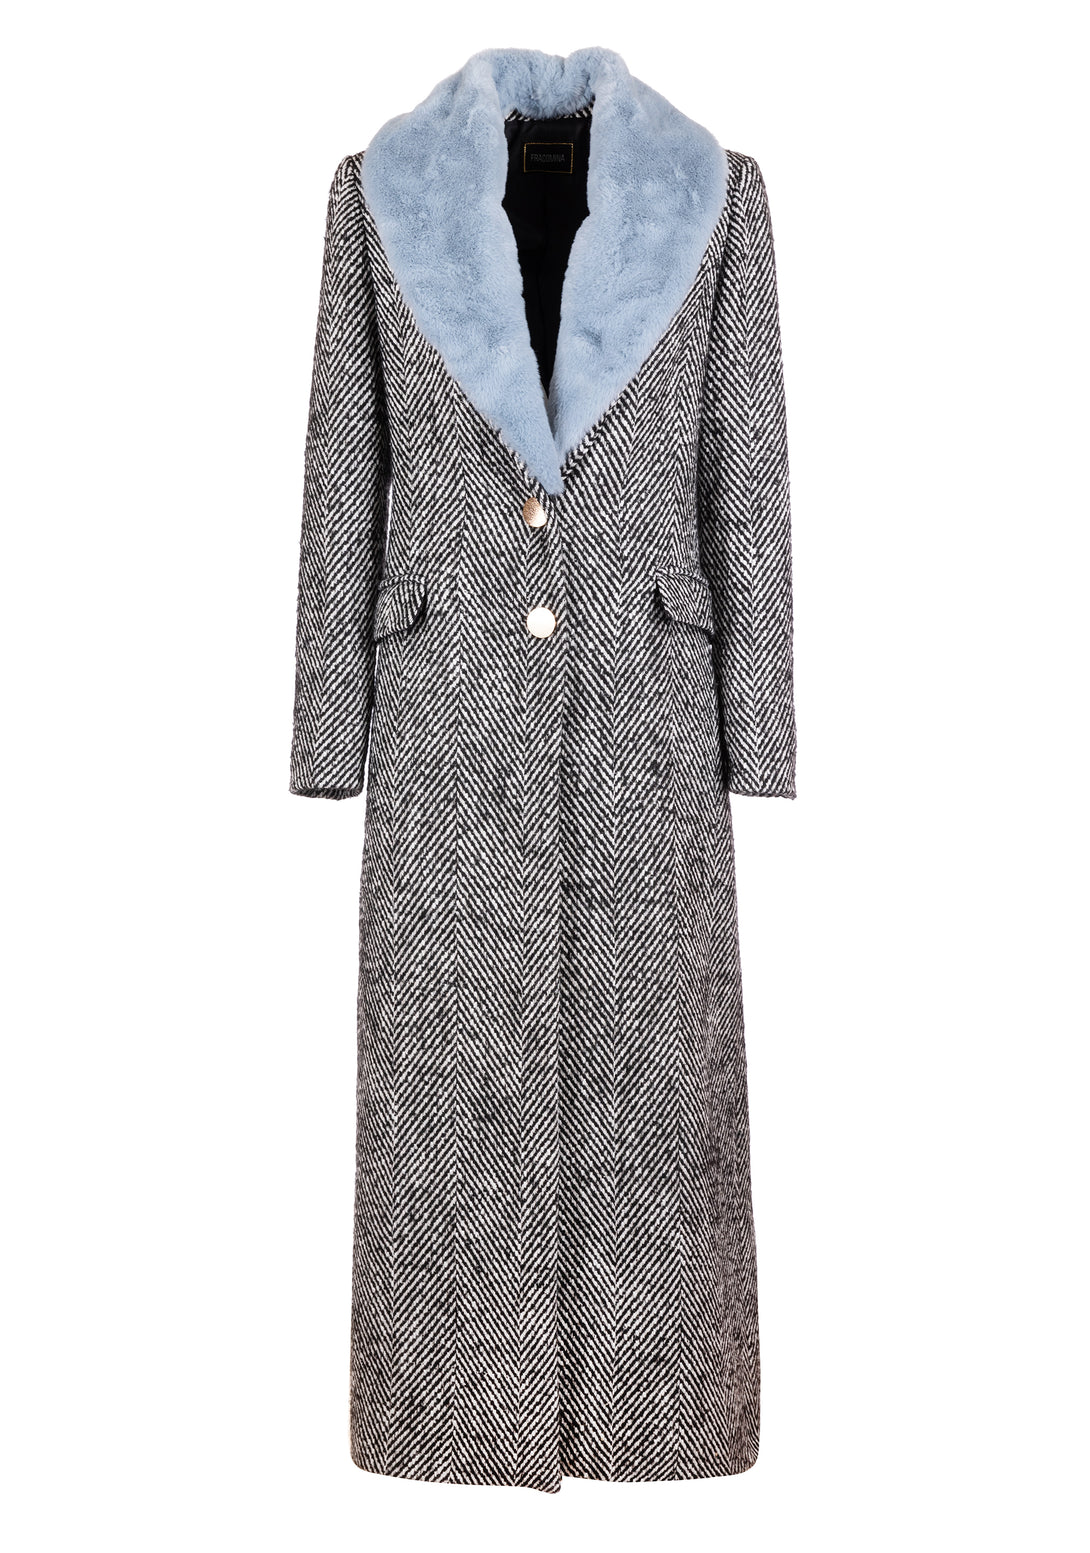 Long coat regular fit made in tweed